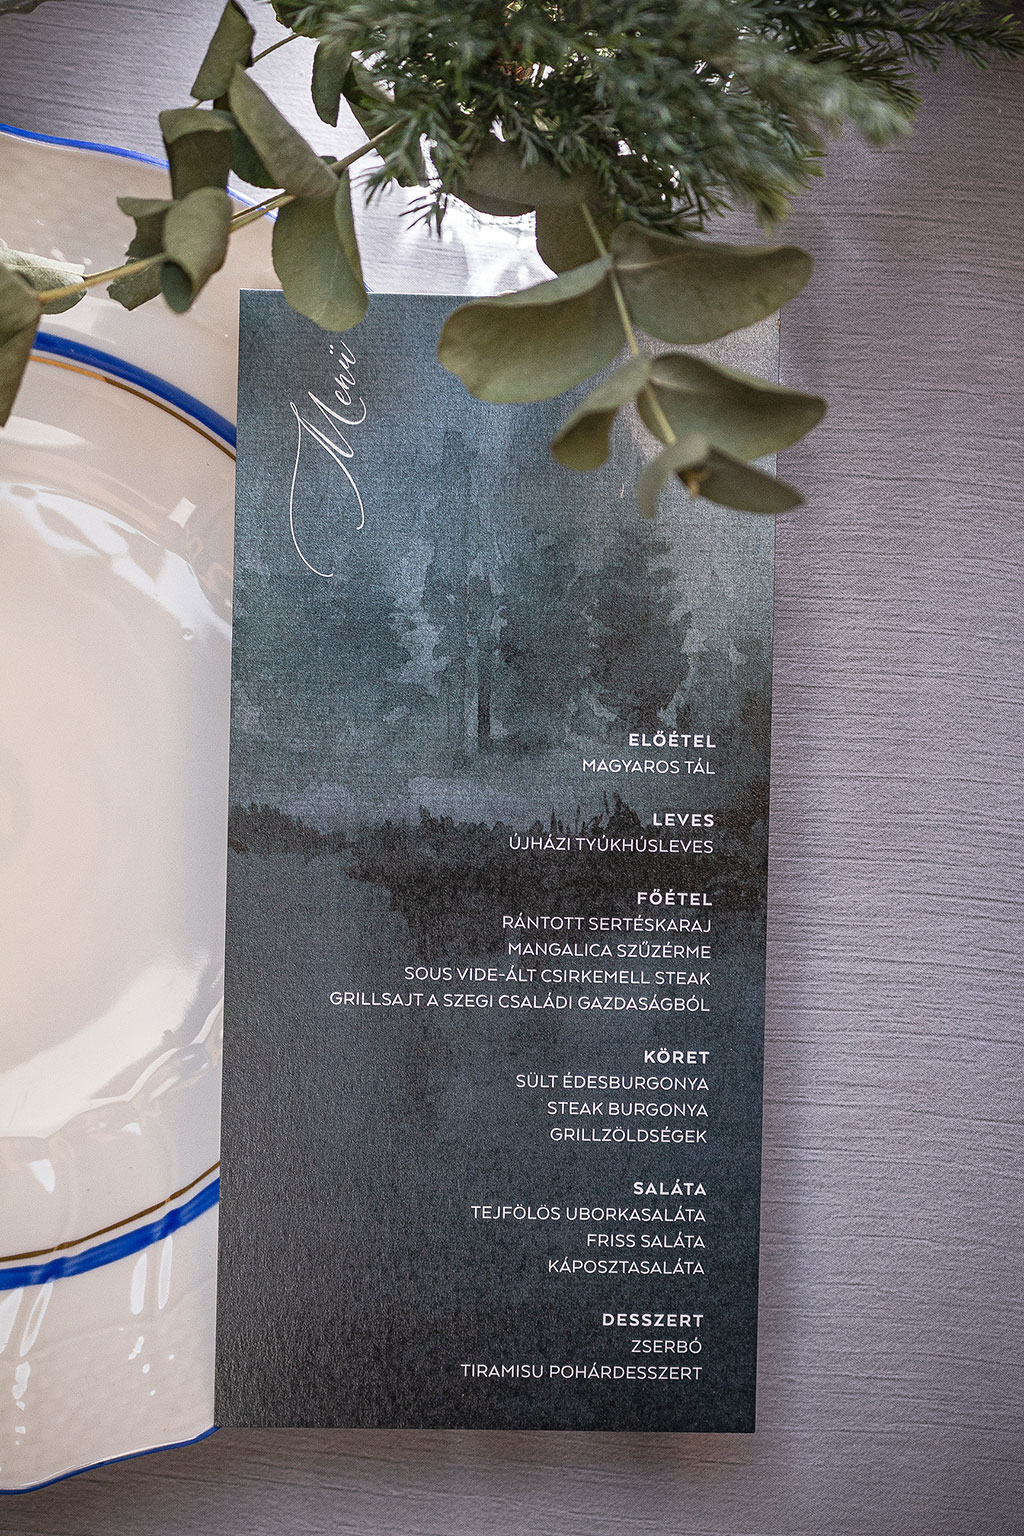 Téli éjszaka esküvői meghívó - watercolor technikával, egylapos-egyoldalas, háromféle téli grafikával és tipóval, gyöngyházfényű papíron